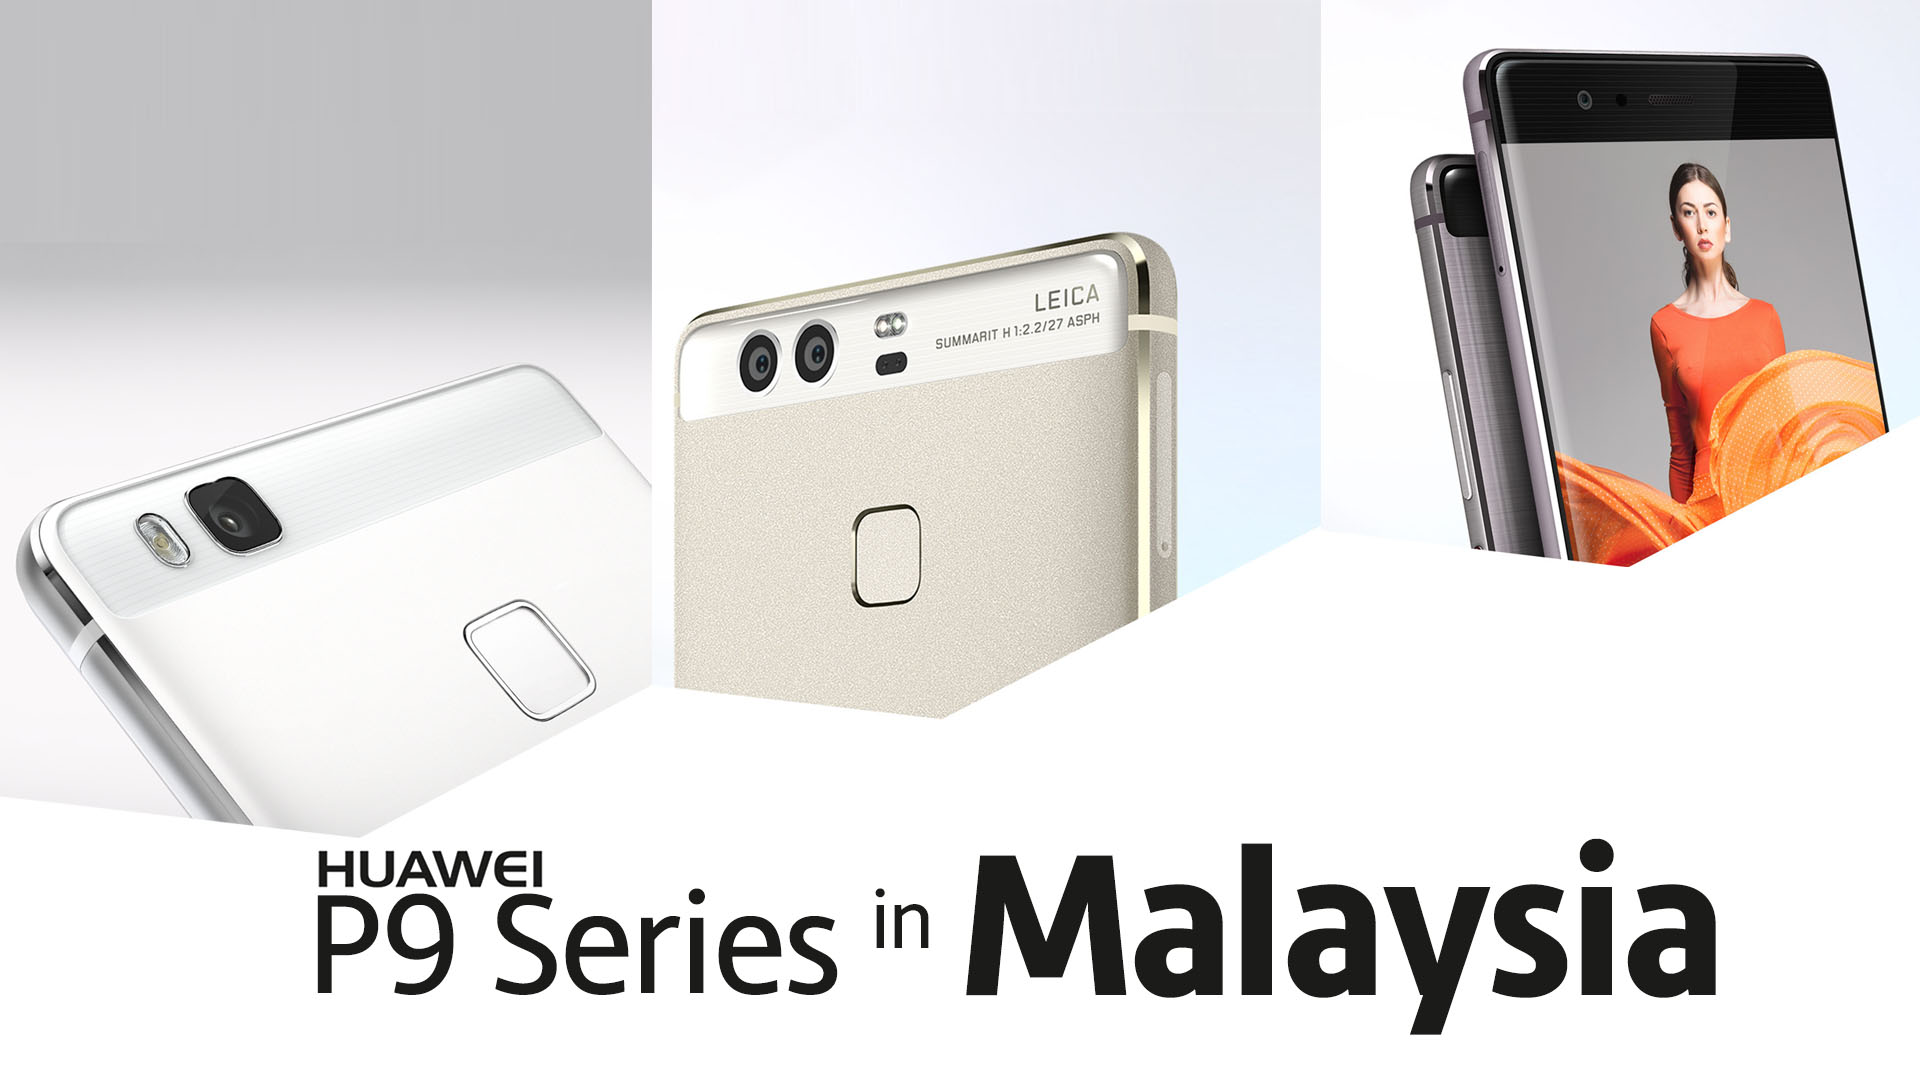 Huawei P9 Series in Malaysia